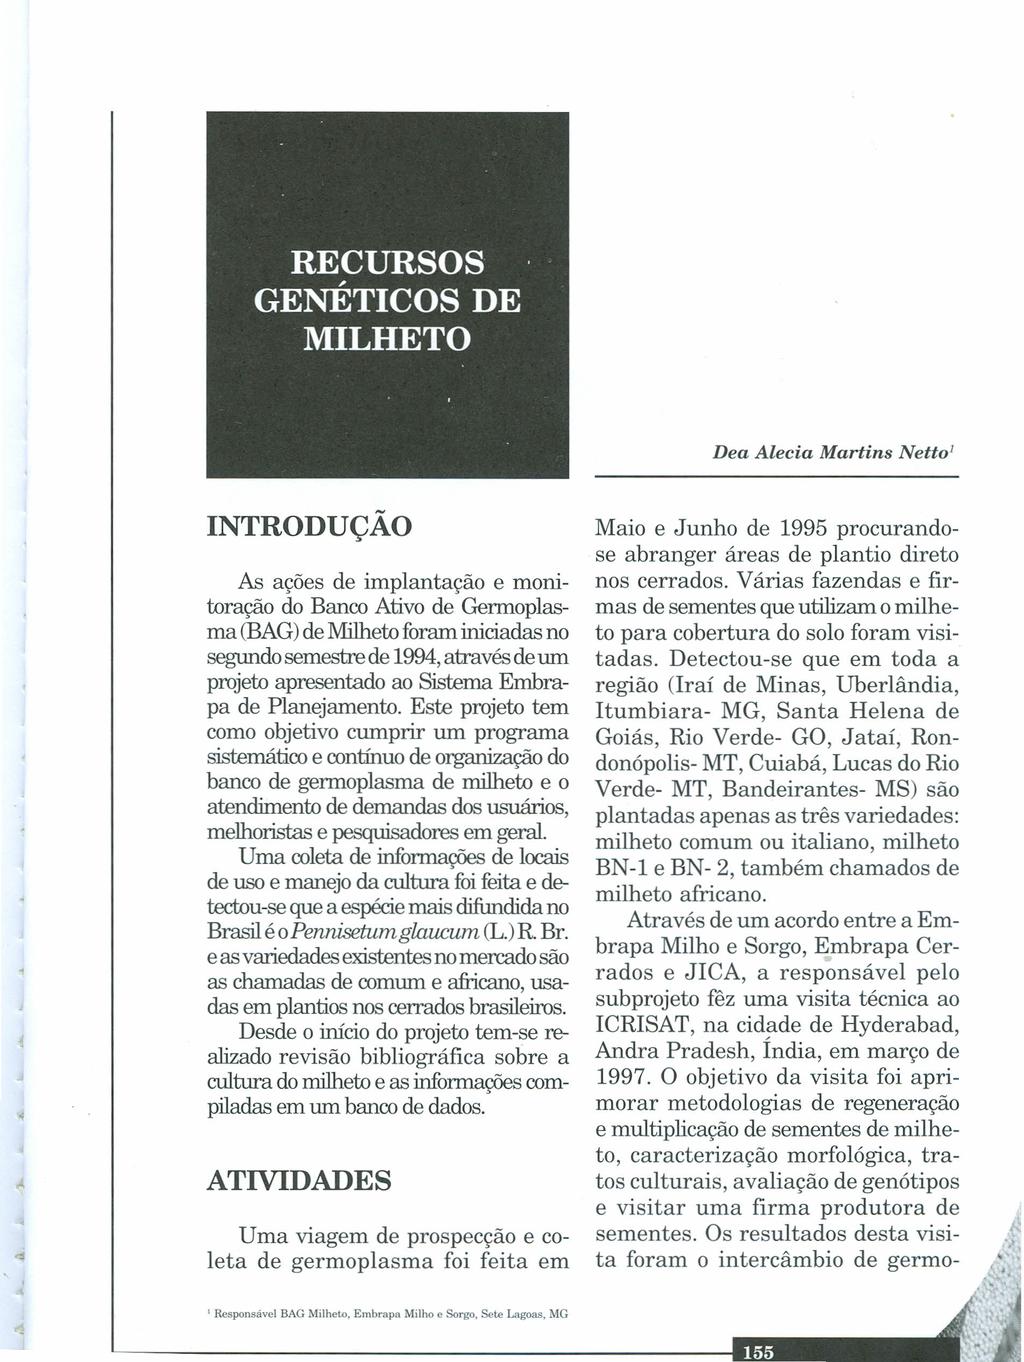 Dea Alecia Martins Netto' INTRODUÇÃO Ai:, ações de implantação e monitoração do Banco Ativo de Gennoplasma (BAG)de Milheto foram iniciadas no segundo semestre de 1994,através de um projeto